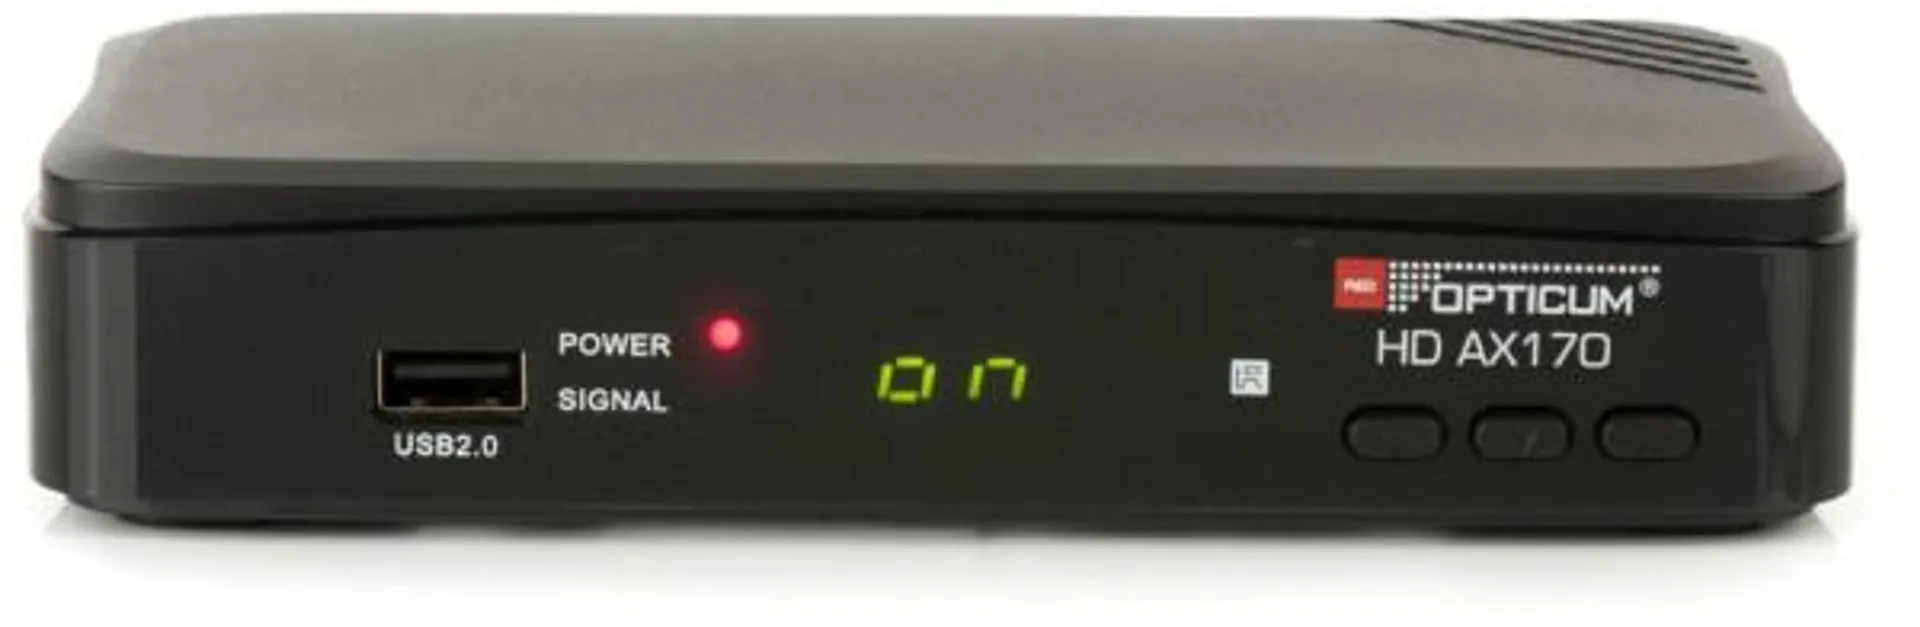 RED OPTICUM HD AX 170 HDTV Sat-Receiver schwarz